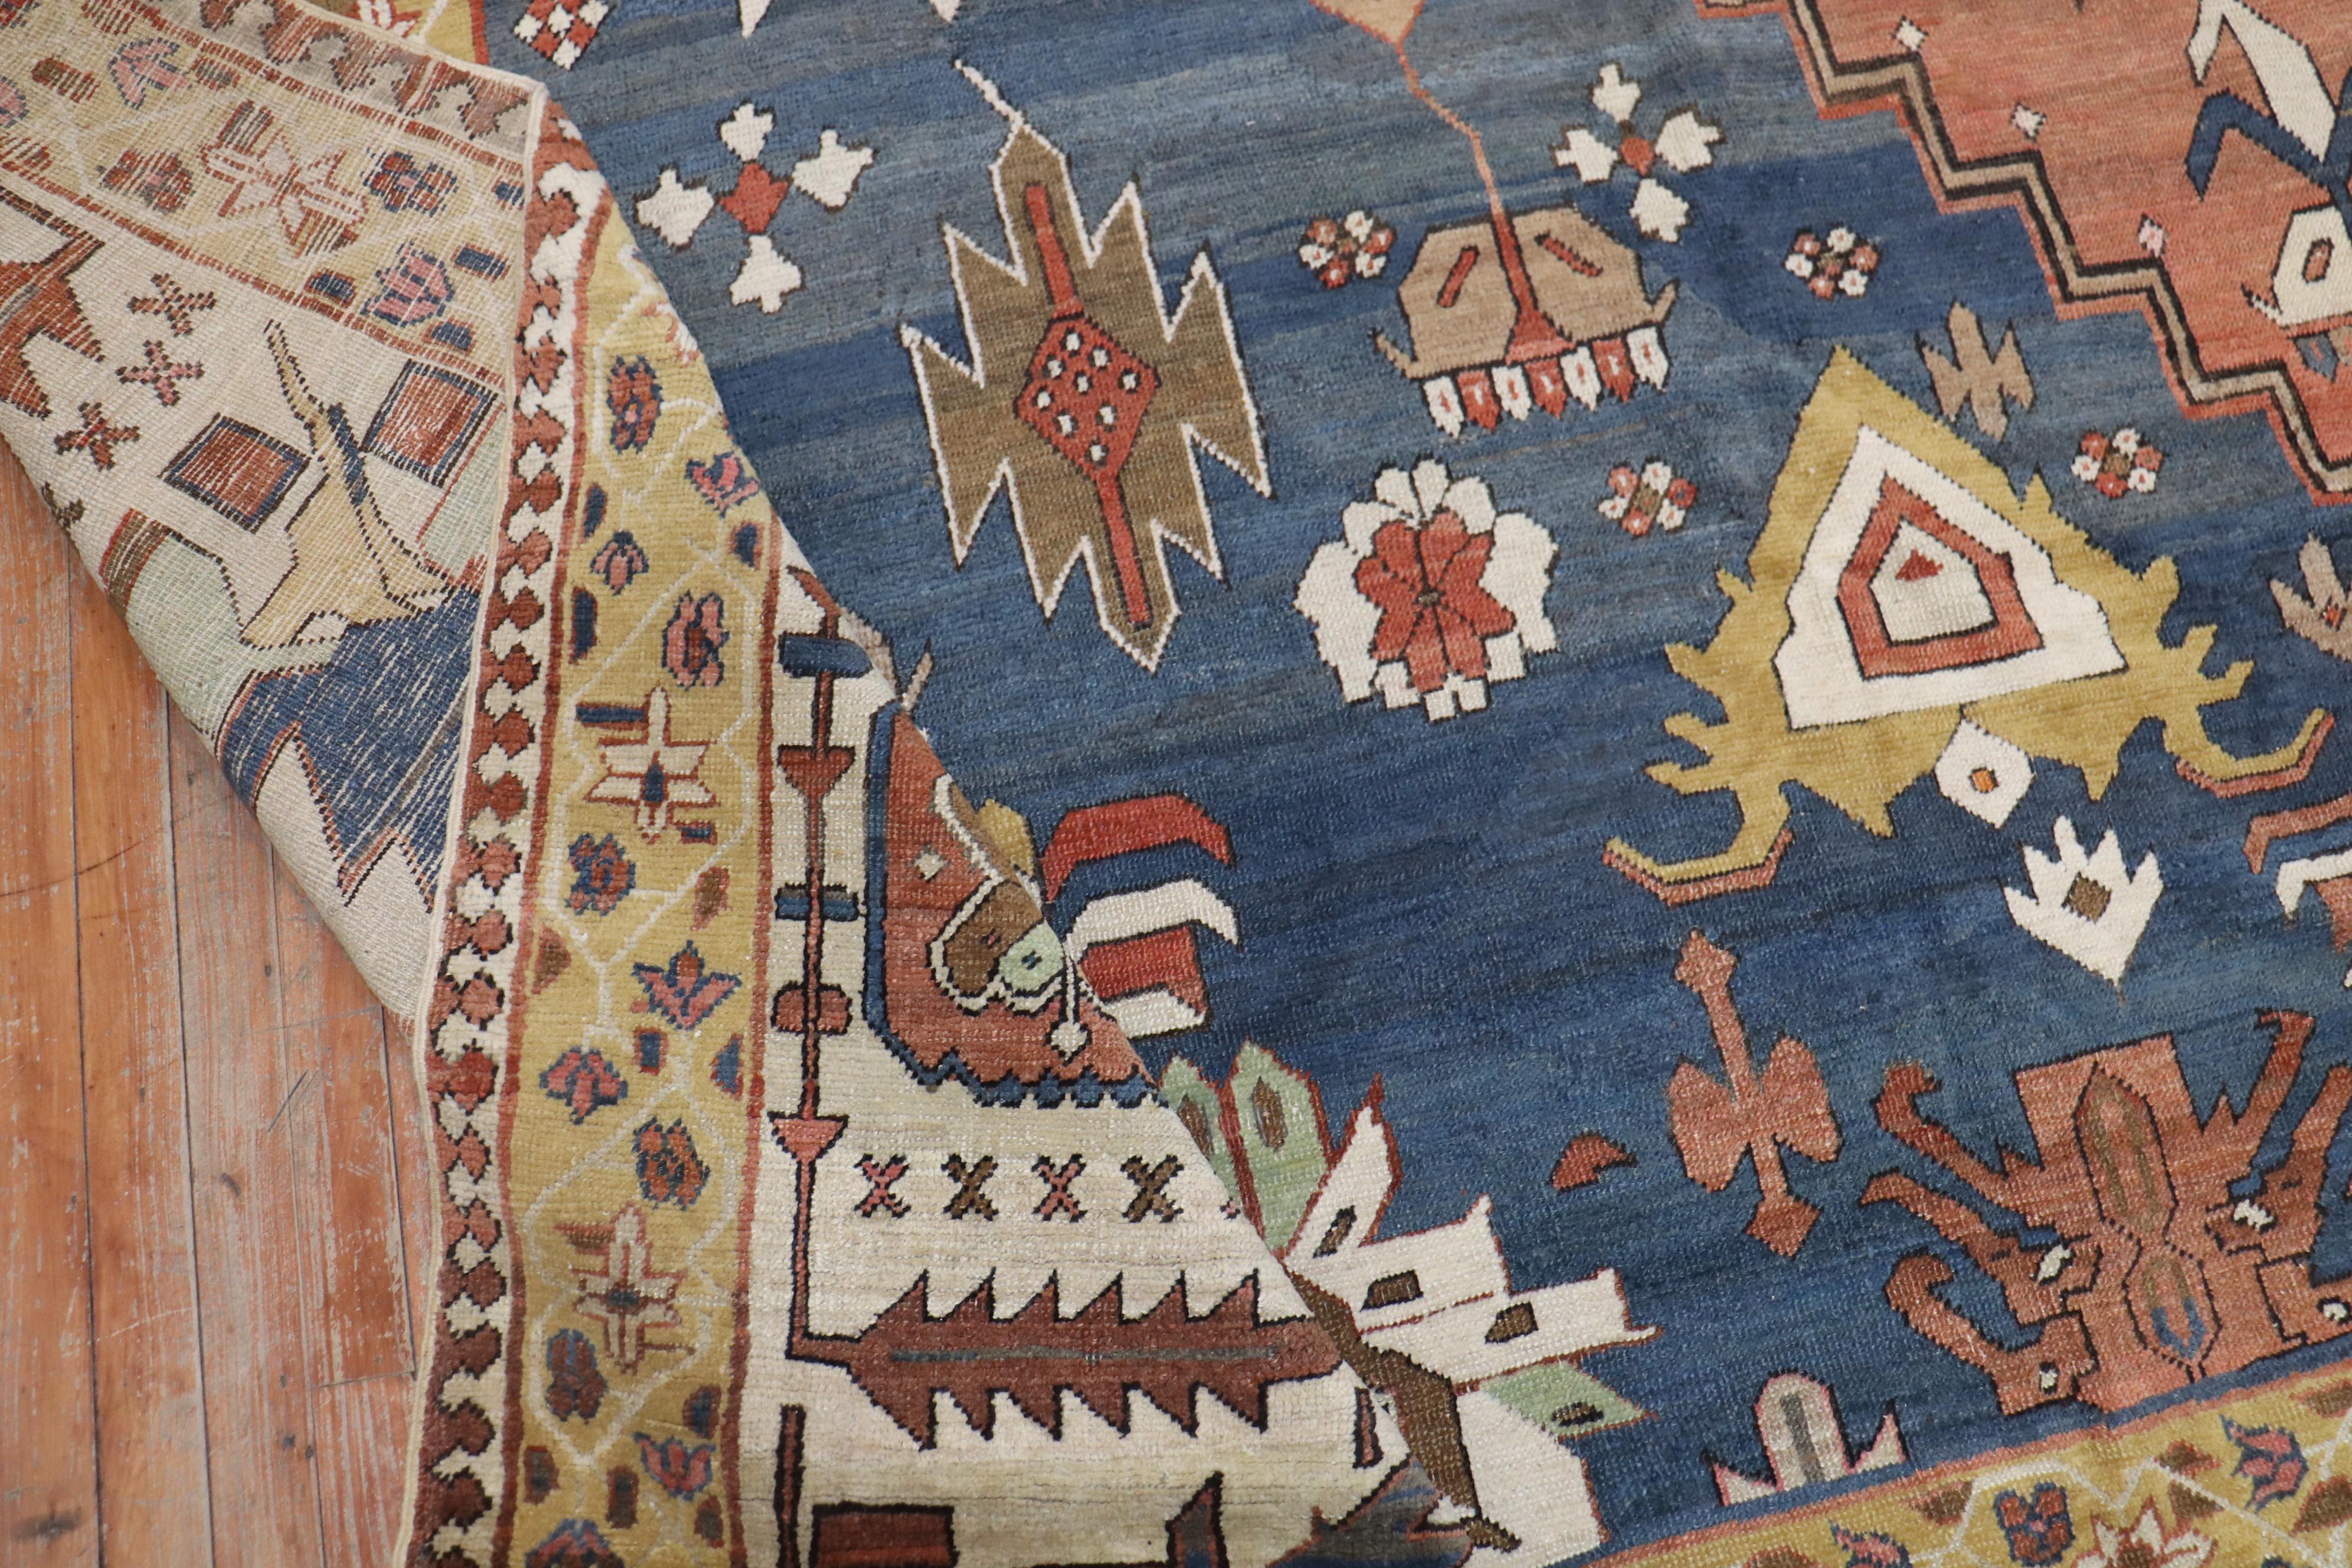 bakshaish rugs